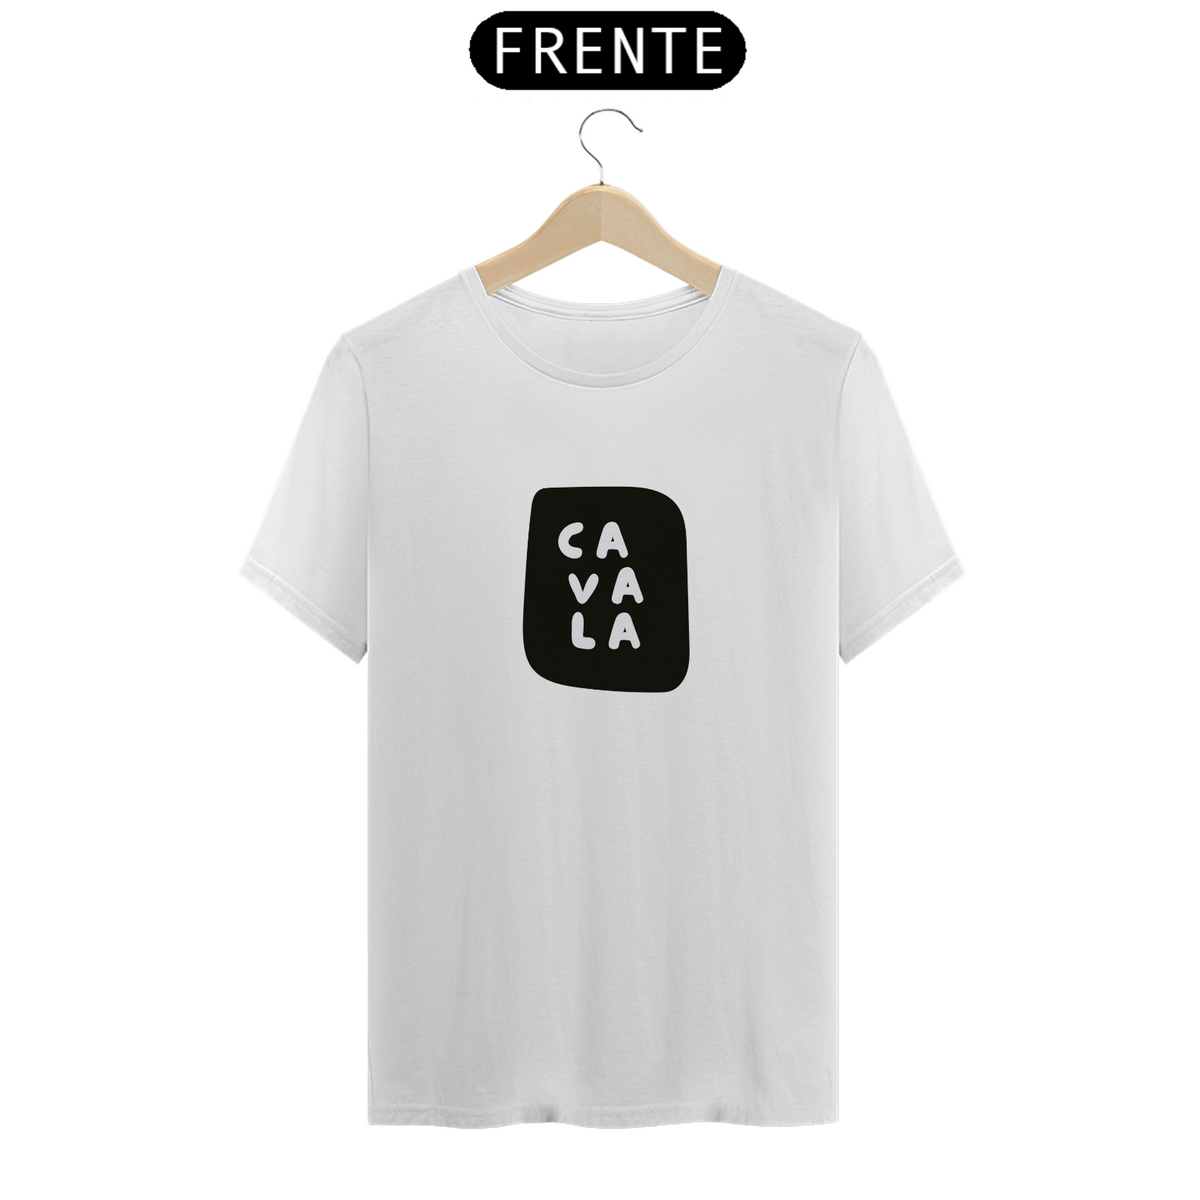 Nome do produto: Camiseta T-Shirt Classic Unissex / Cavala